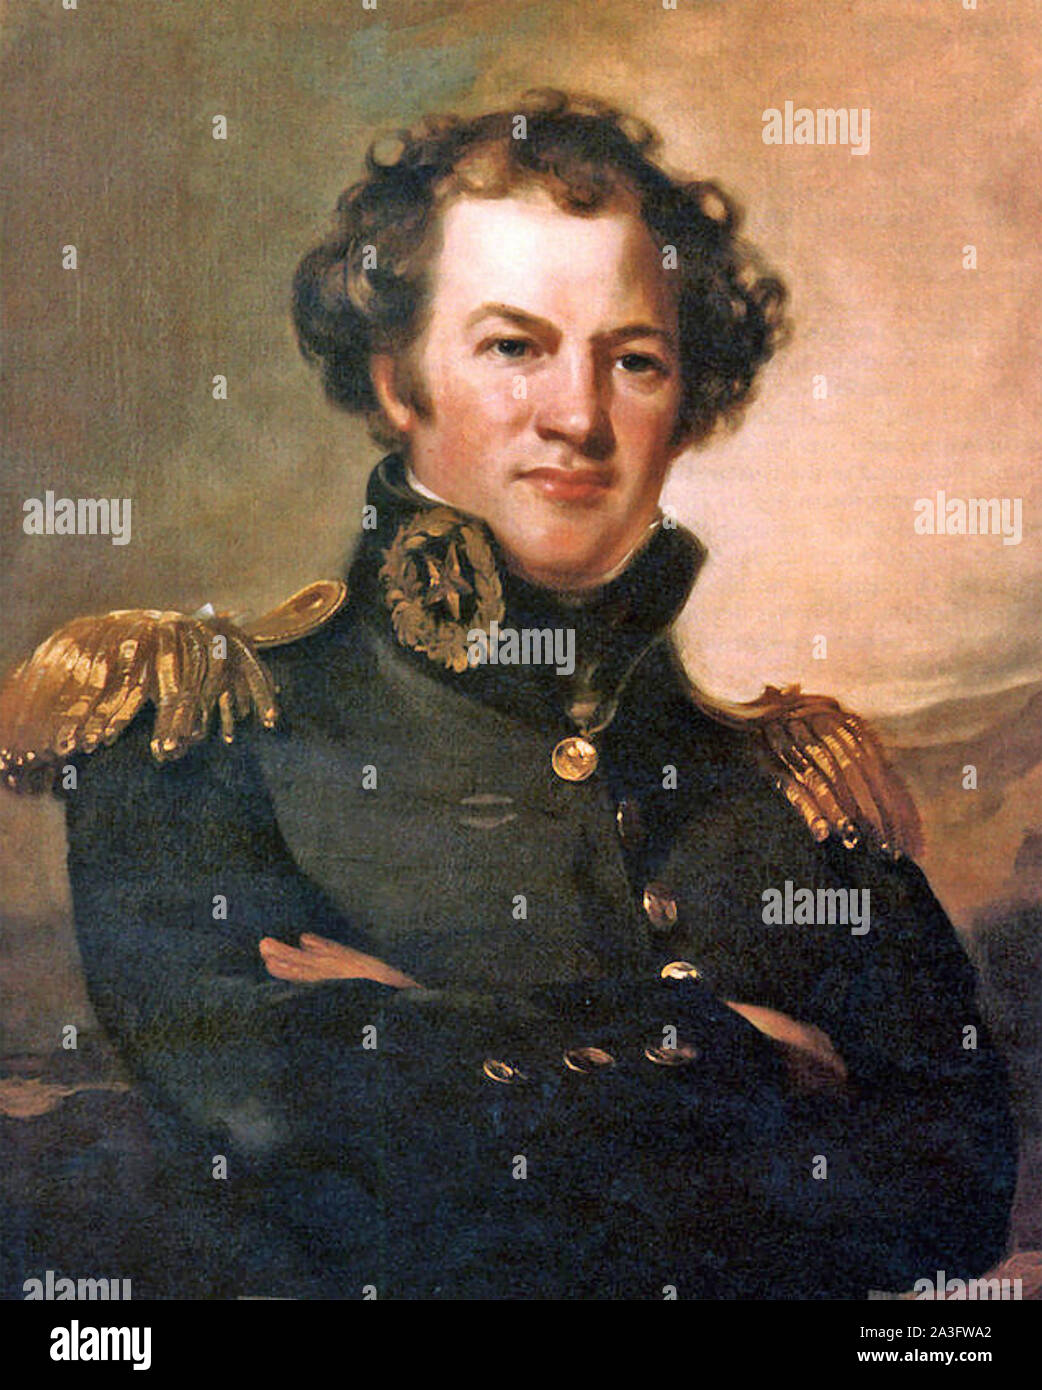 ALEXANDER MACOMB (1782-1841) comandante general del ejército de los Estados Unidos 1828-1841. Un retrato 18239 por Thomas Sully Foto de stock